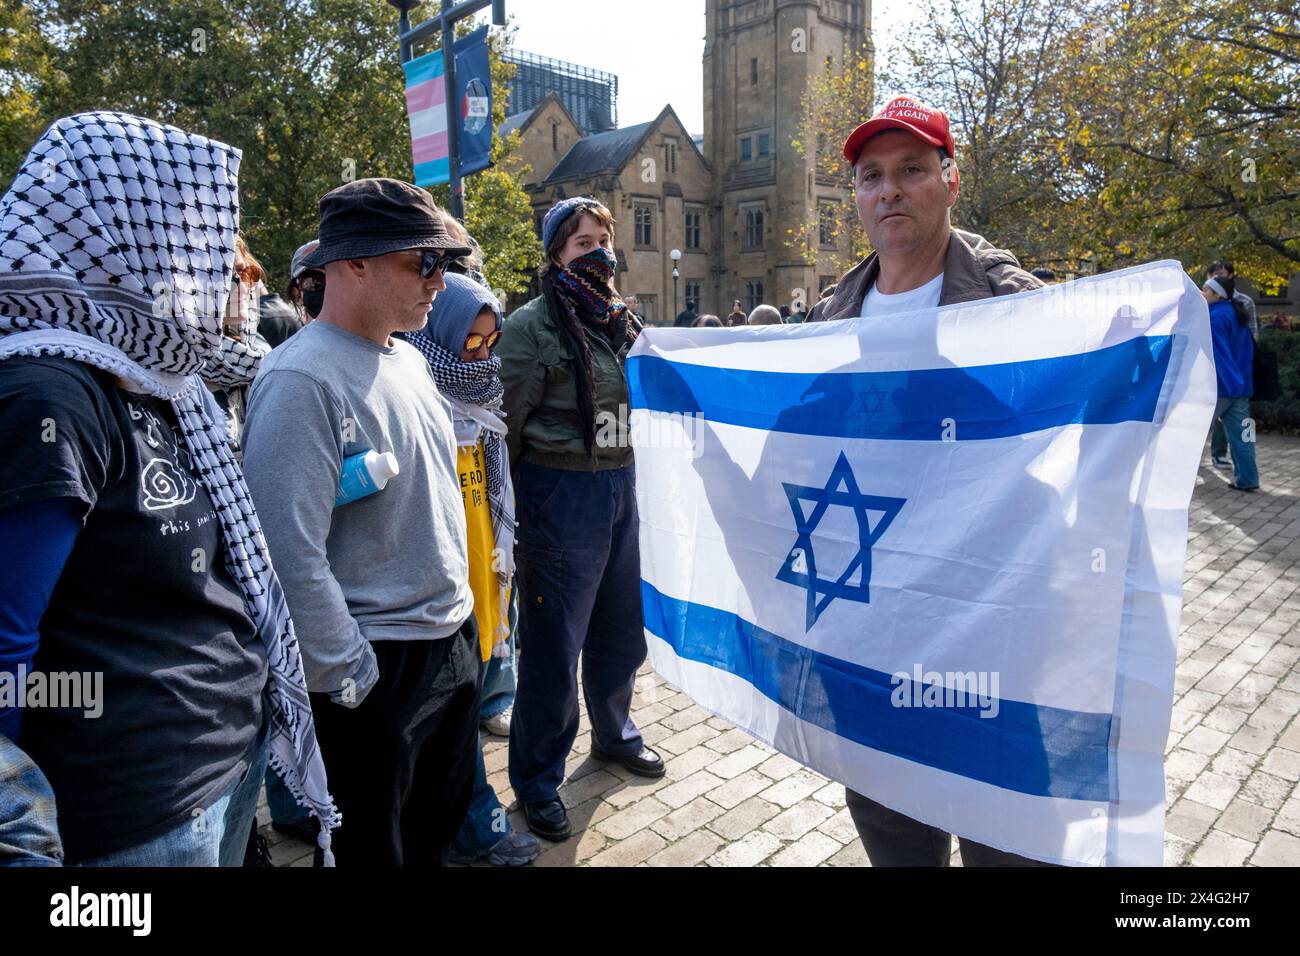 Un contre-manifestant agite un drapeau israélien sur les manifestants lors d'une manifestation pro-palestinienne sur le campus de l'Université de Melbourne. Le pro-israélien porte une casquette Make America Great Again. Melbourne, Victoria, Australie. Banque D'Images